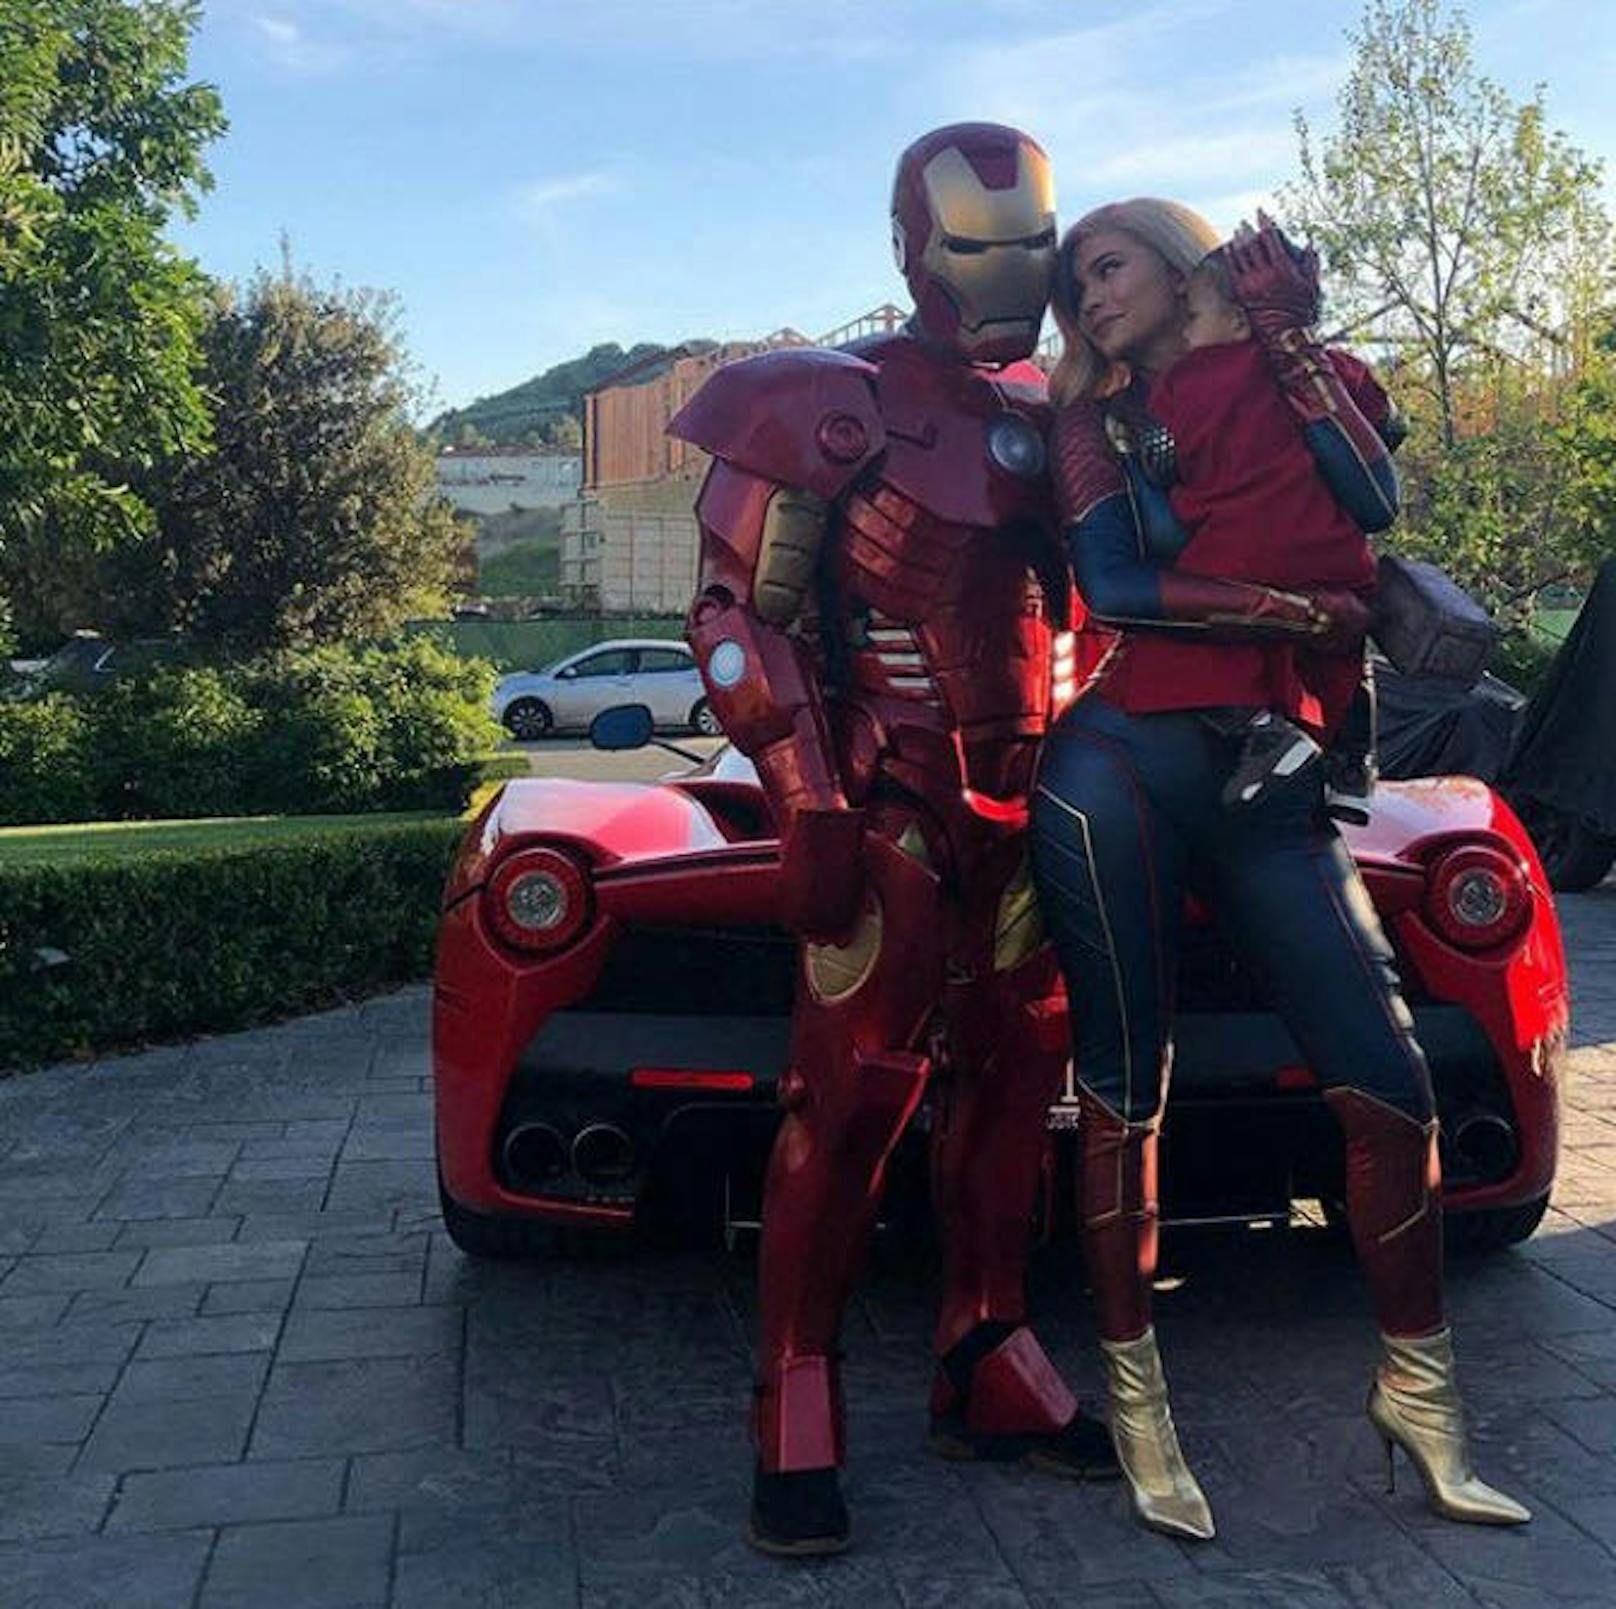 26.04.2019: Kylie Jenner feiert den Start von "Avengers: Endgame" als Captain Marvel. "Iron Man" gesellt sich ebenfalls dazu, Tochter Stormi wurde nicht verkleidet. 